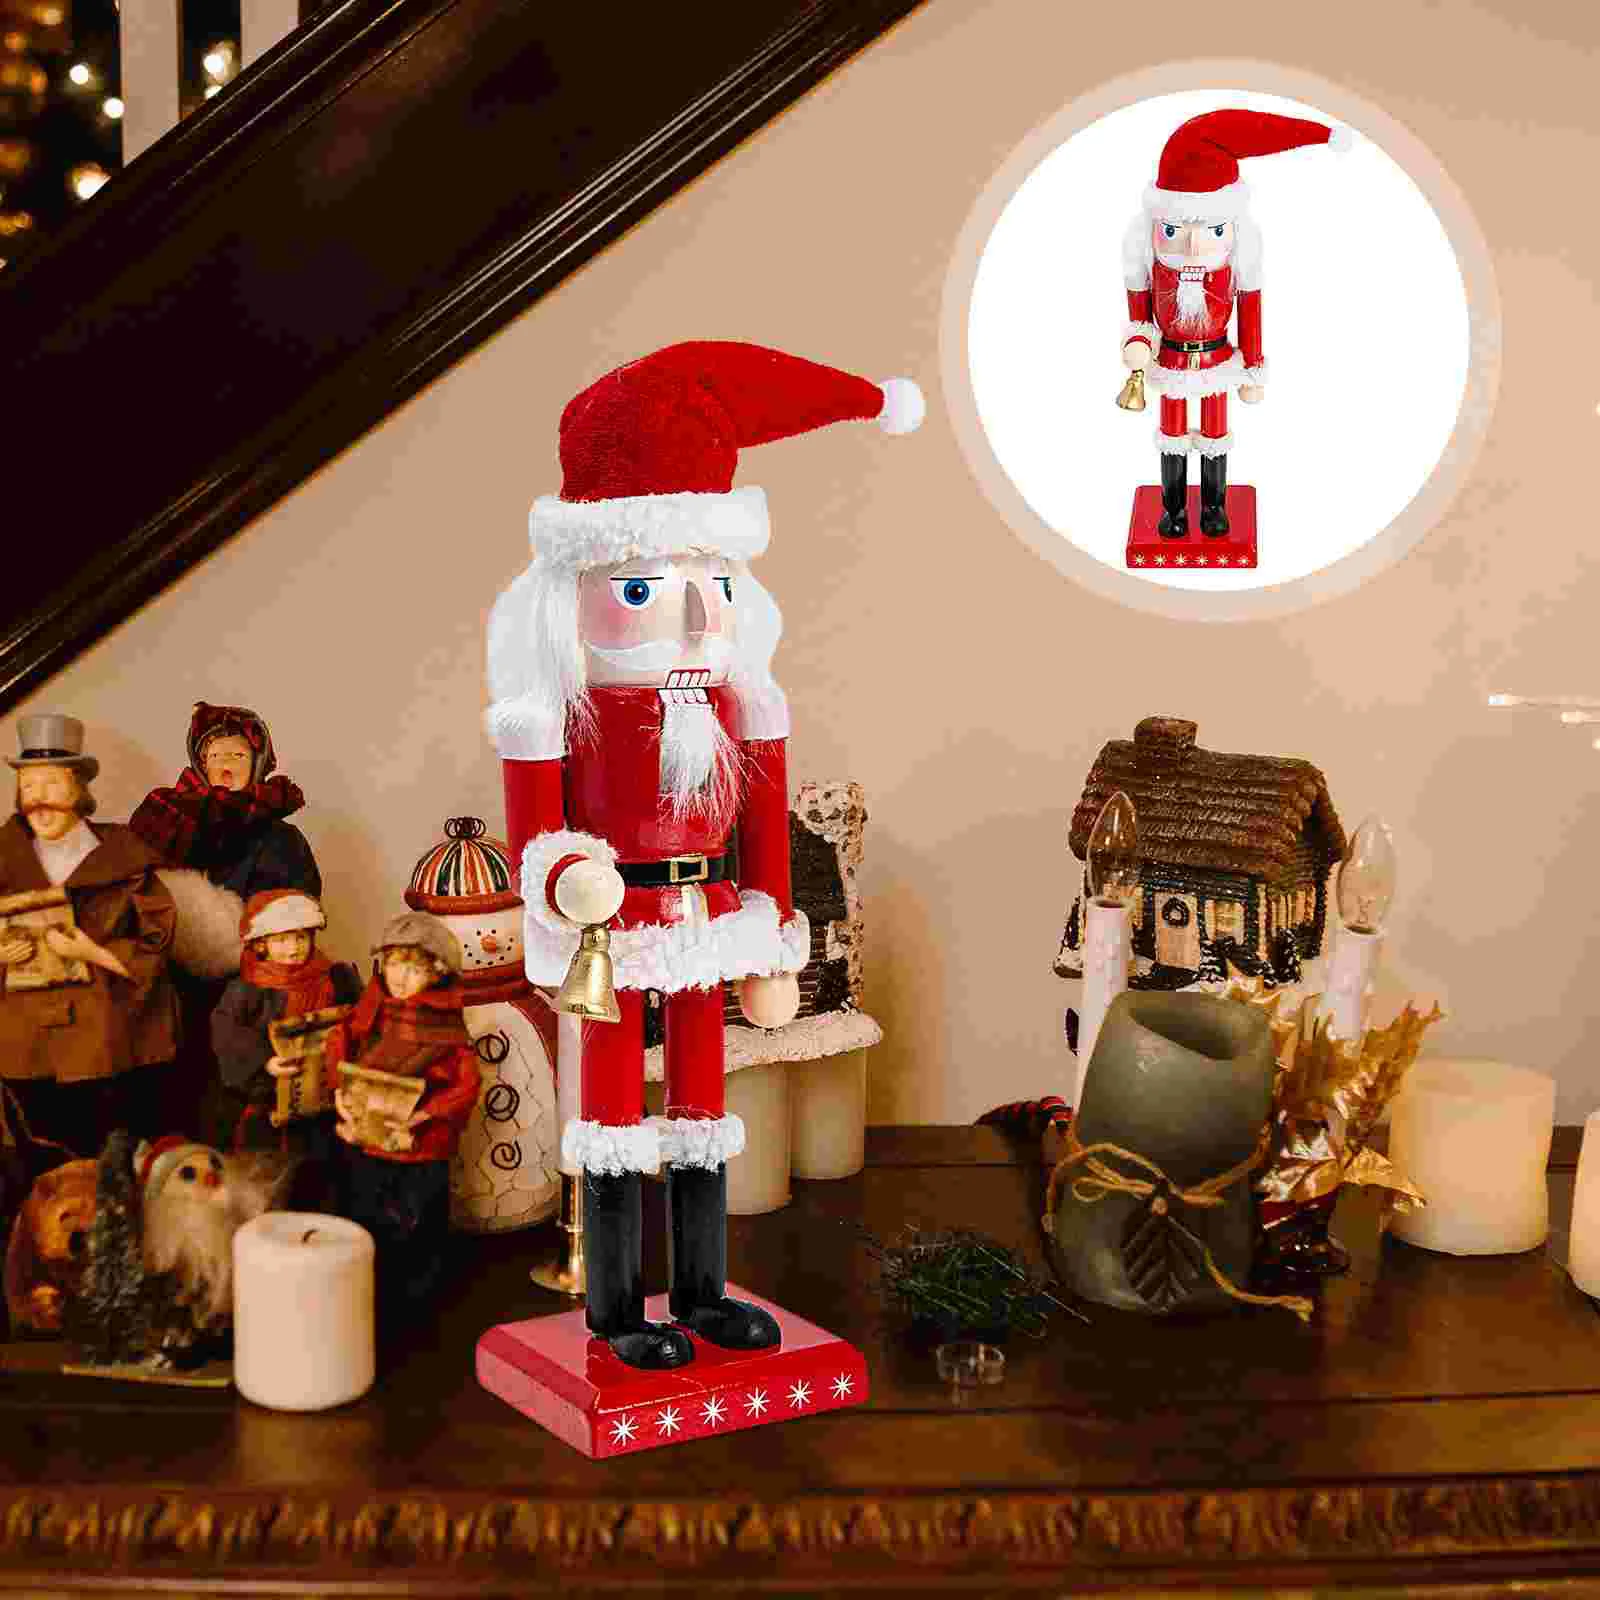 

Nutcracker Christmas Decoraciones Para Cuartos Wooden Santa Decorations Decor Soldier Wood Crafts Claus Xmas Figures Nutcrackers